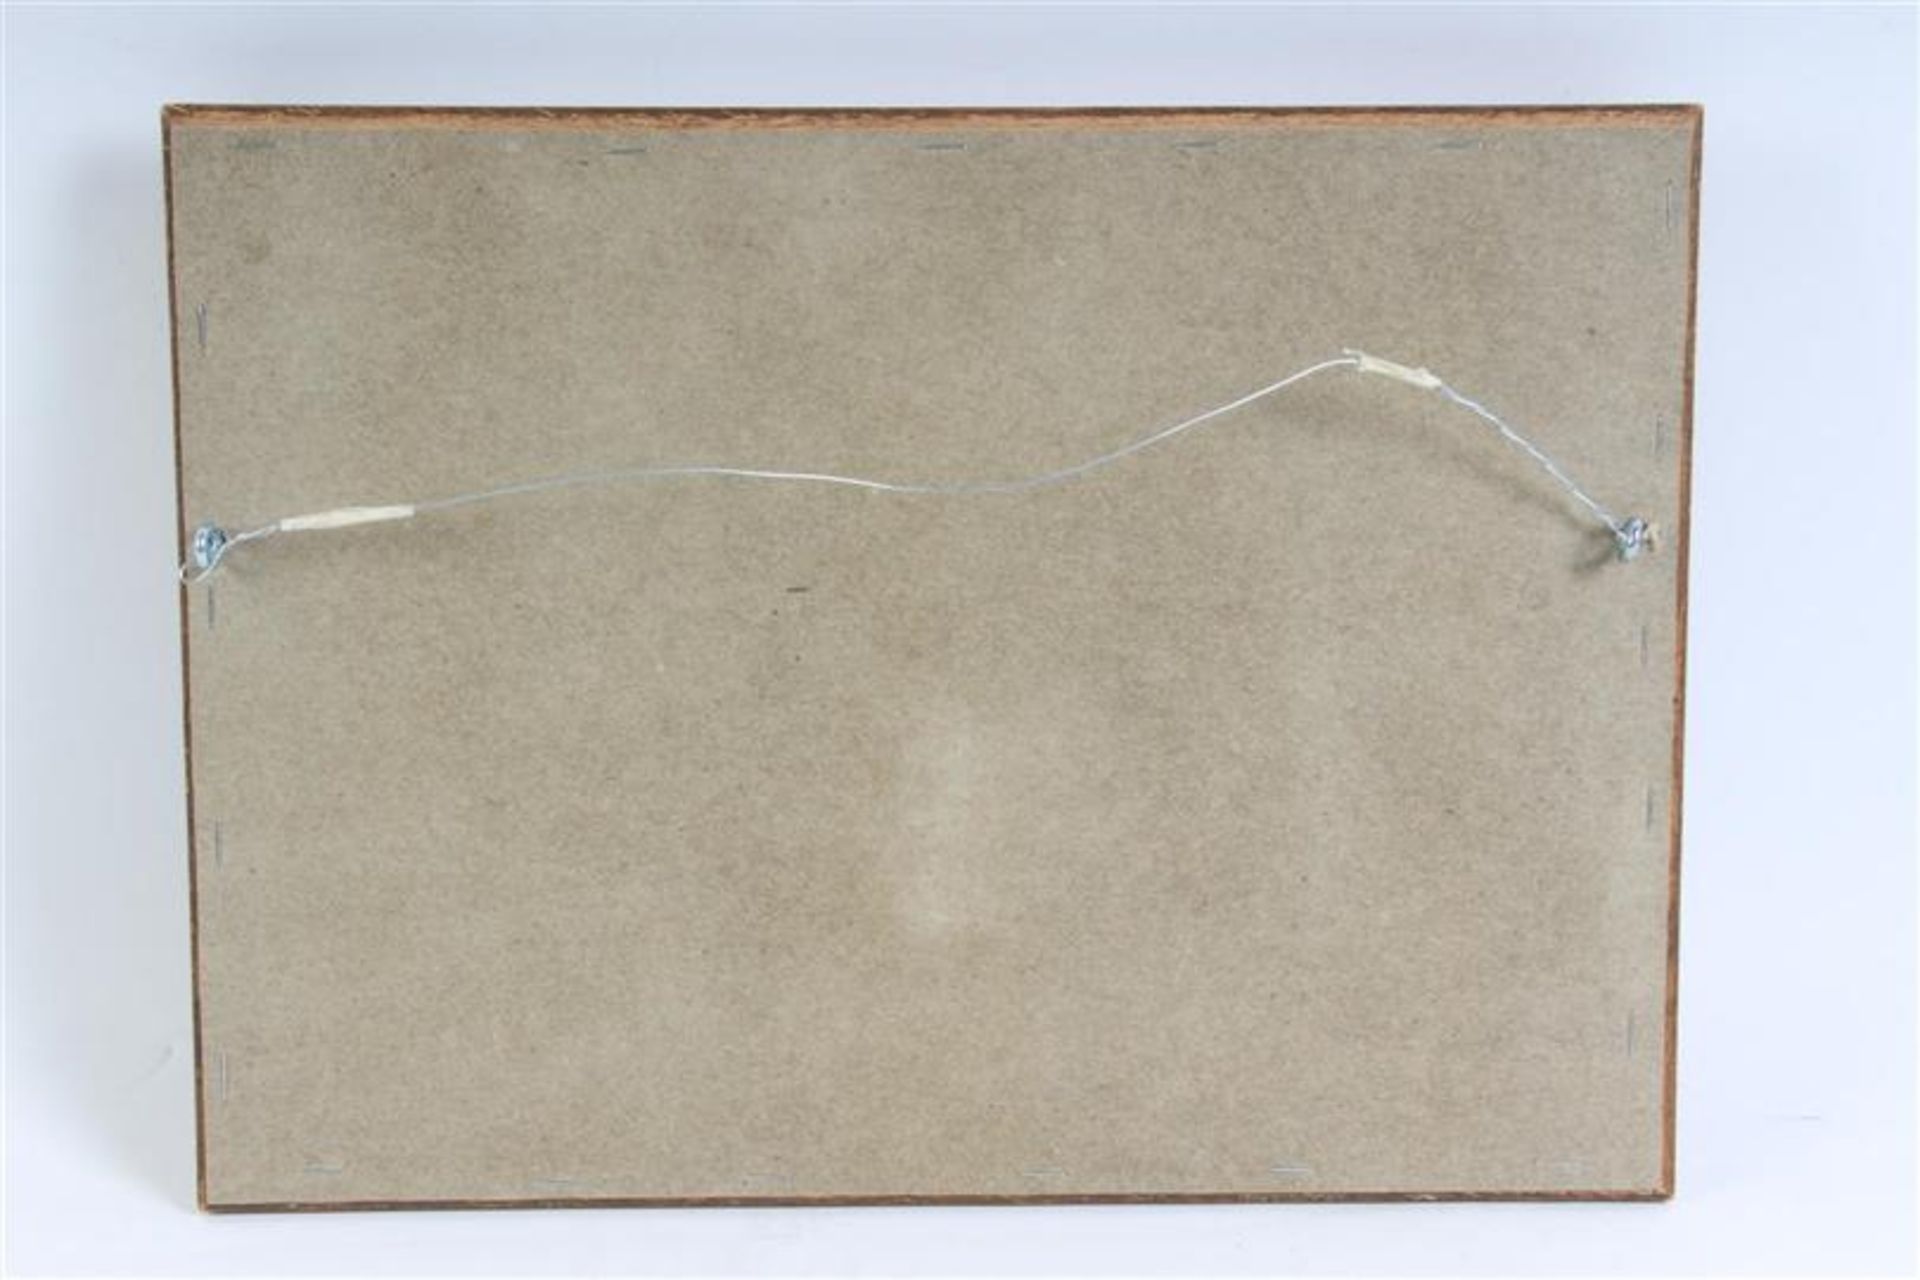 Schilderij op paneel, 'Strandgezicht', gesigneerd J. Hoek. HxB: 19 x 28 cm. - Bild 3 aus 4